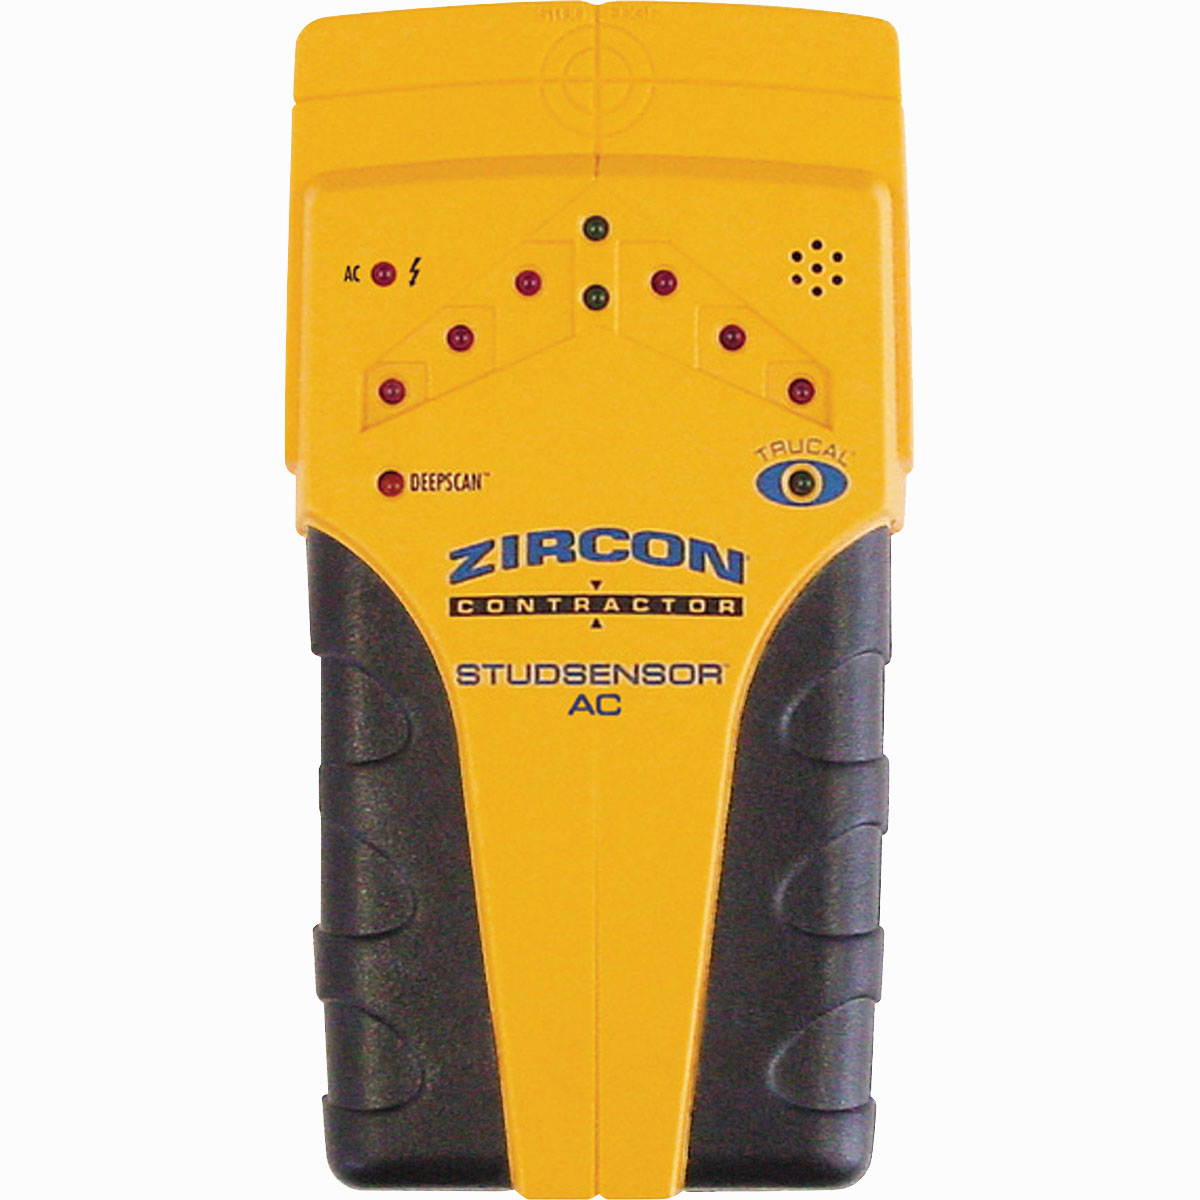 Zircon StudSensor Contractor AC